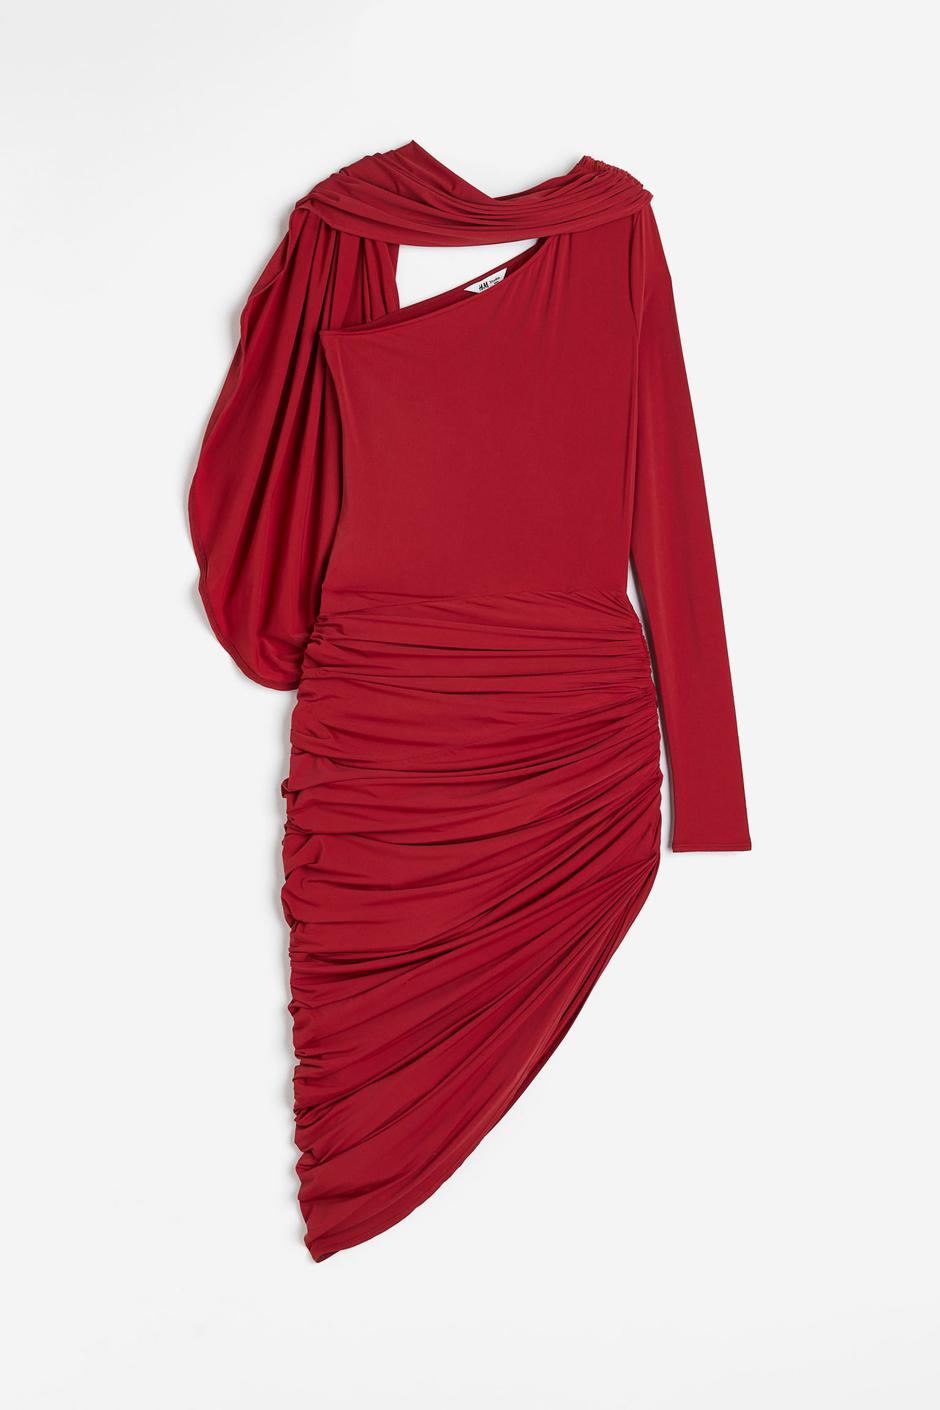 Foto: H&M, crvena mini haljina na jedno rame (79,99 eura) | Autor: 